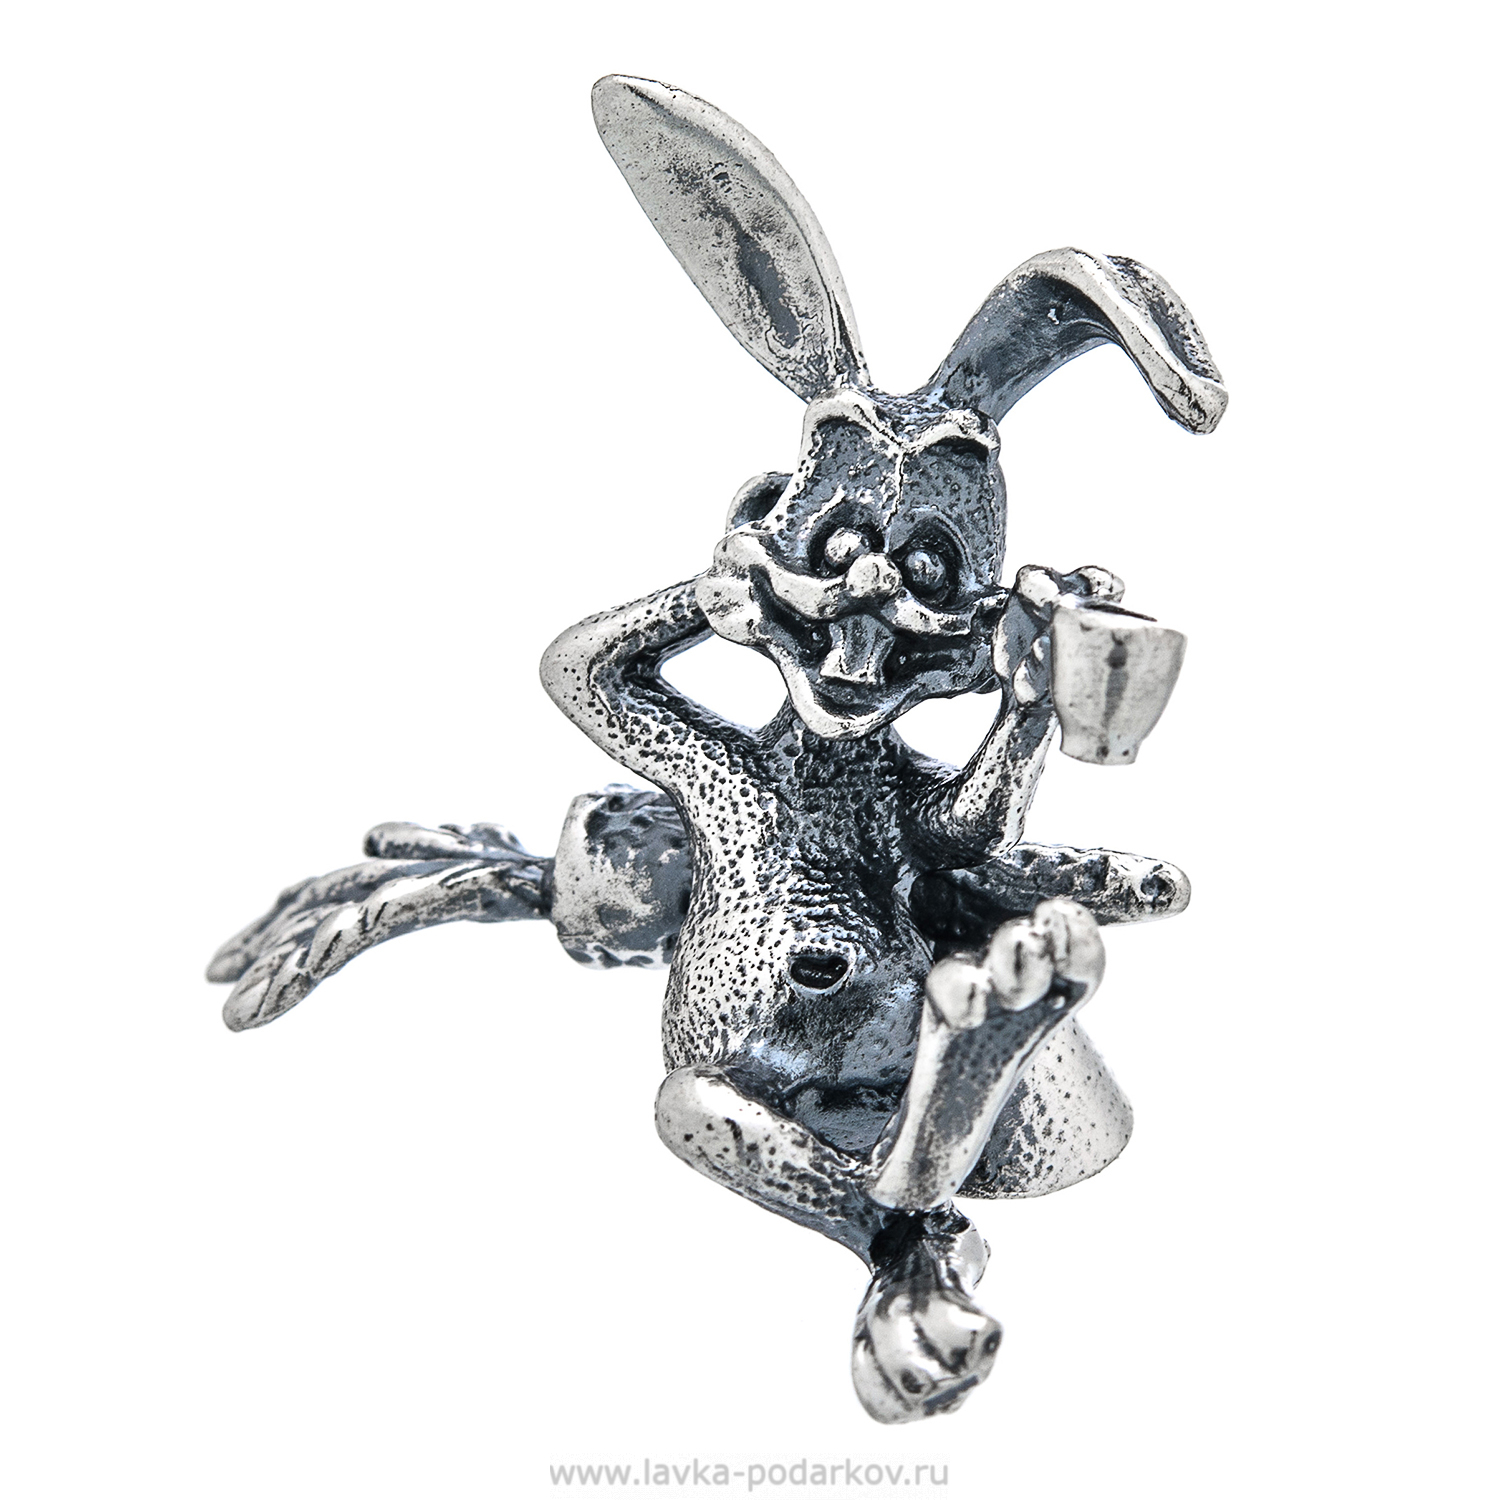 Кролики серебро купить. Серебряная статуэтка кролик. Статуэтки серебристые кролики. Статуэтка кролик сидячий серебристый. Серебряная фигурка кролика Рюмка.